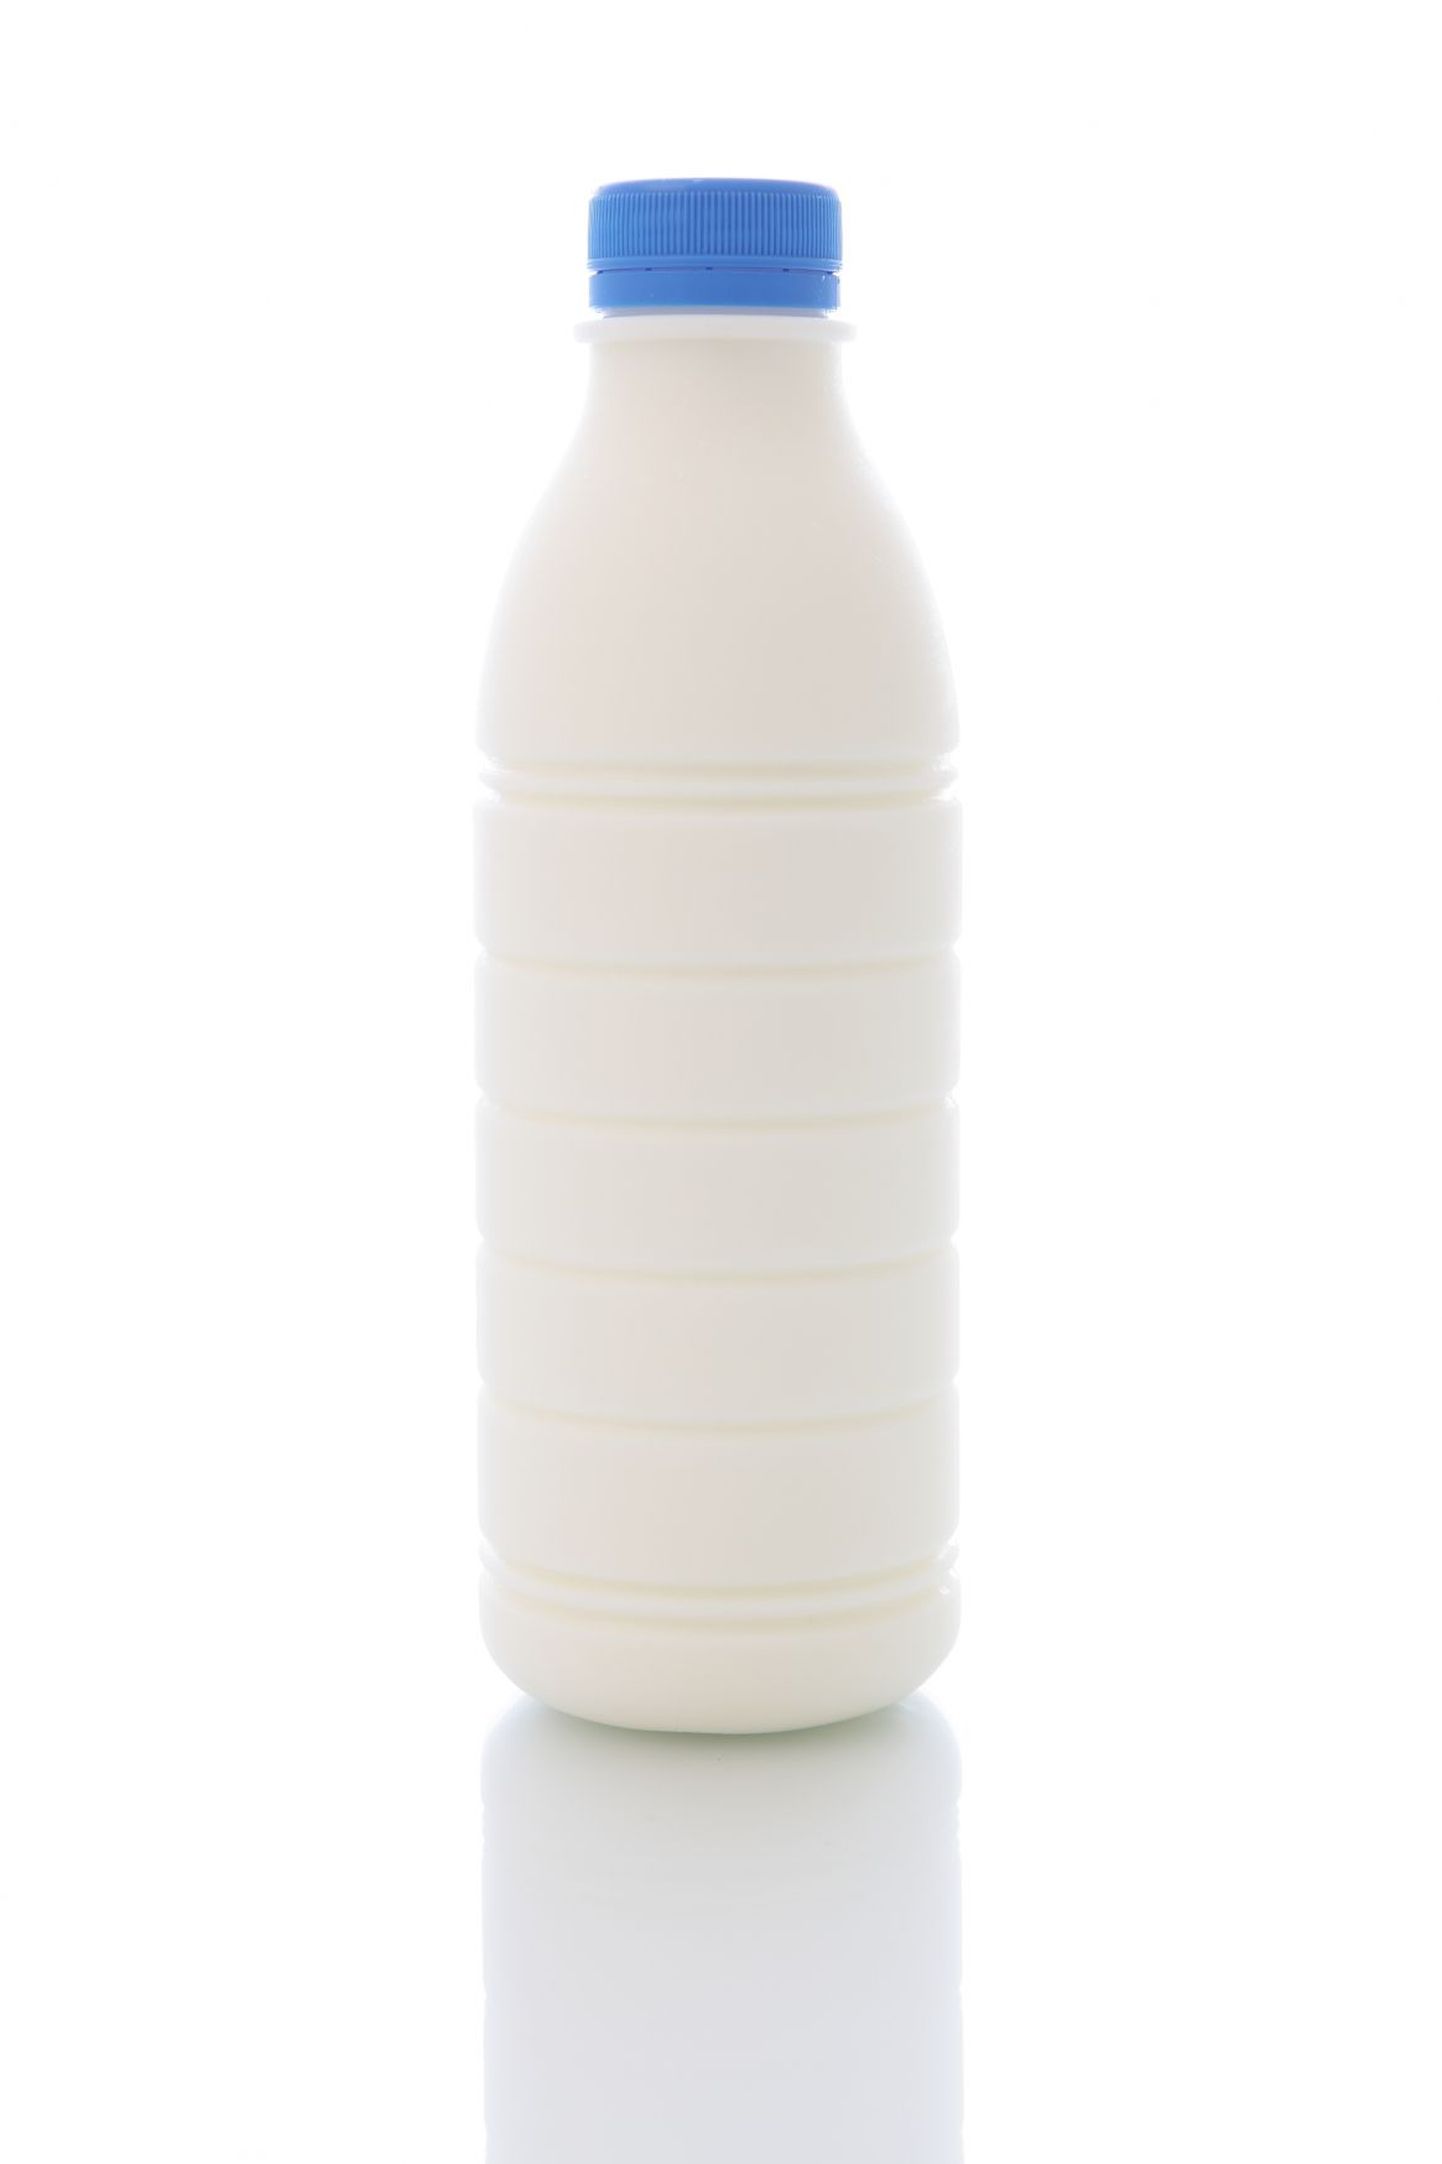 Lahtist piima soovitatakse enne tarvitamist kuumutada.